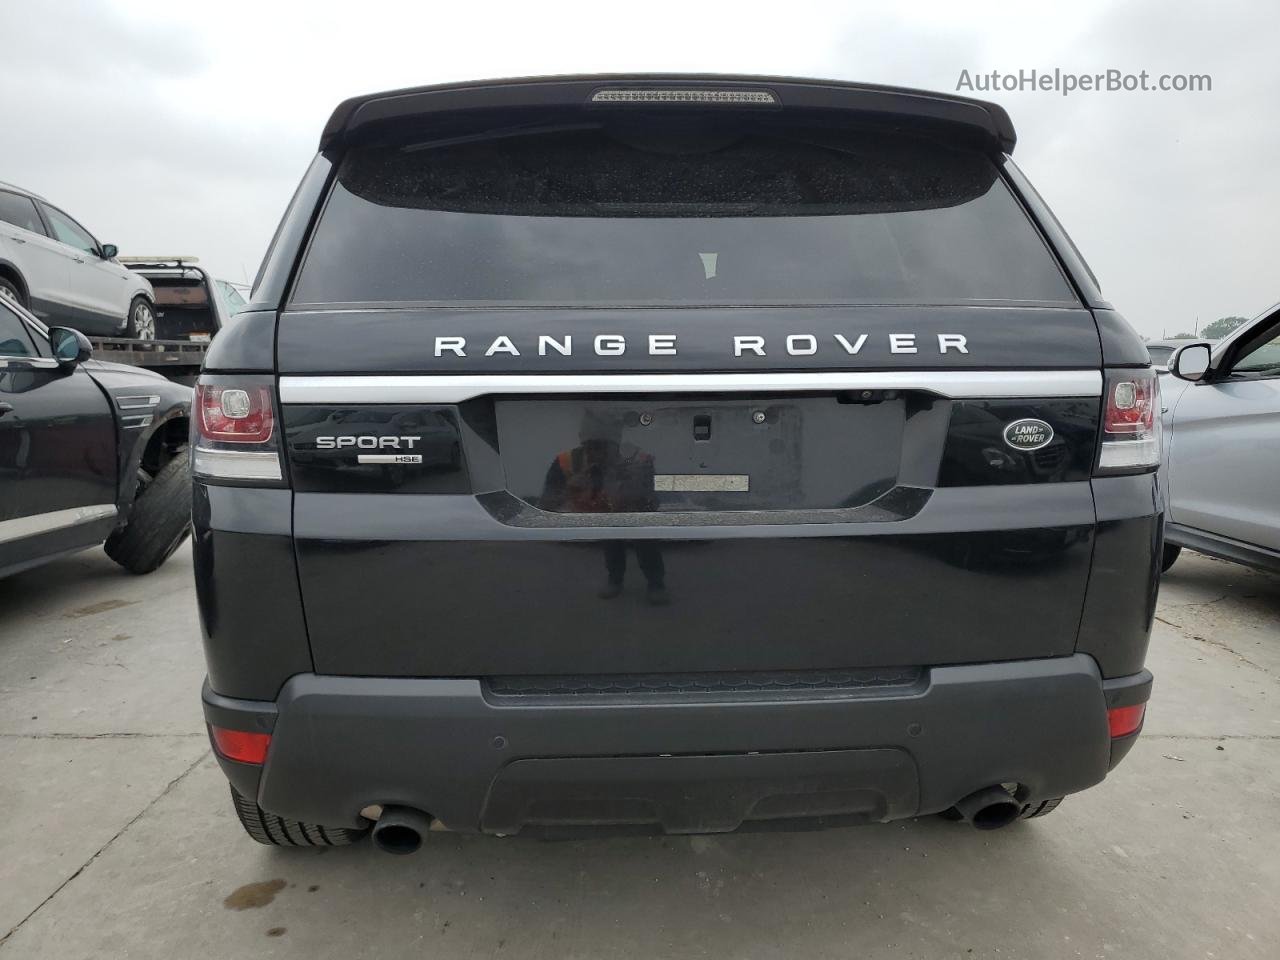 2017 Land Rover Range Rover Sport Hse Черный vin: SALWR2FV7HA133917